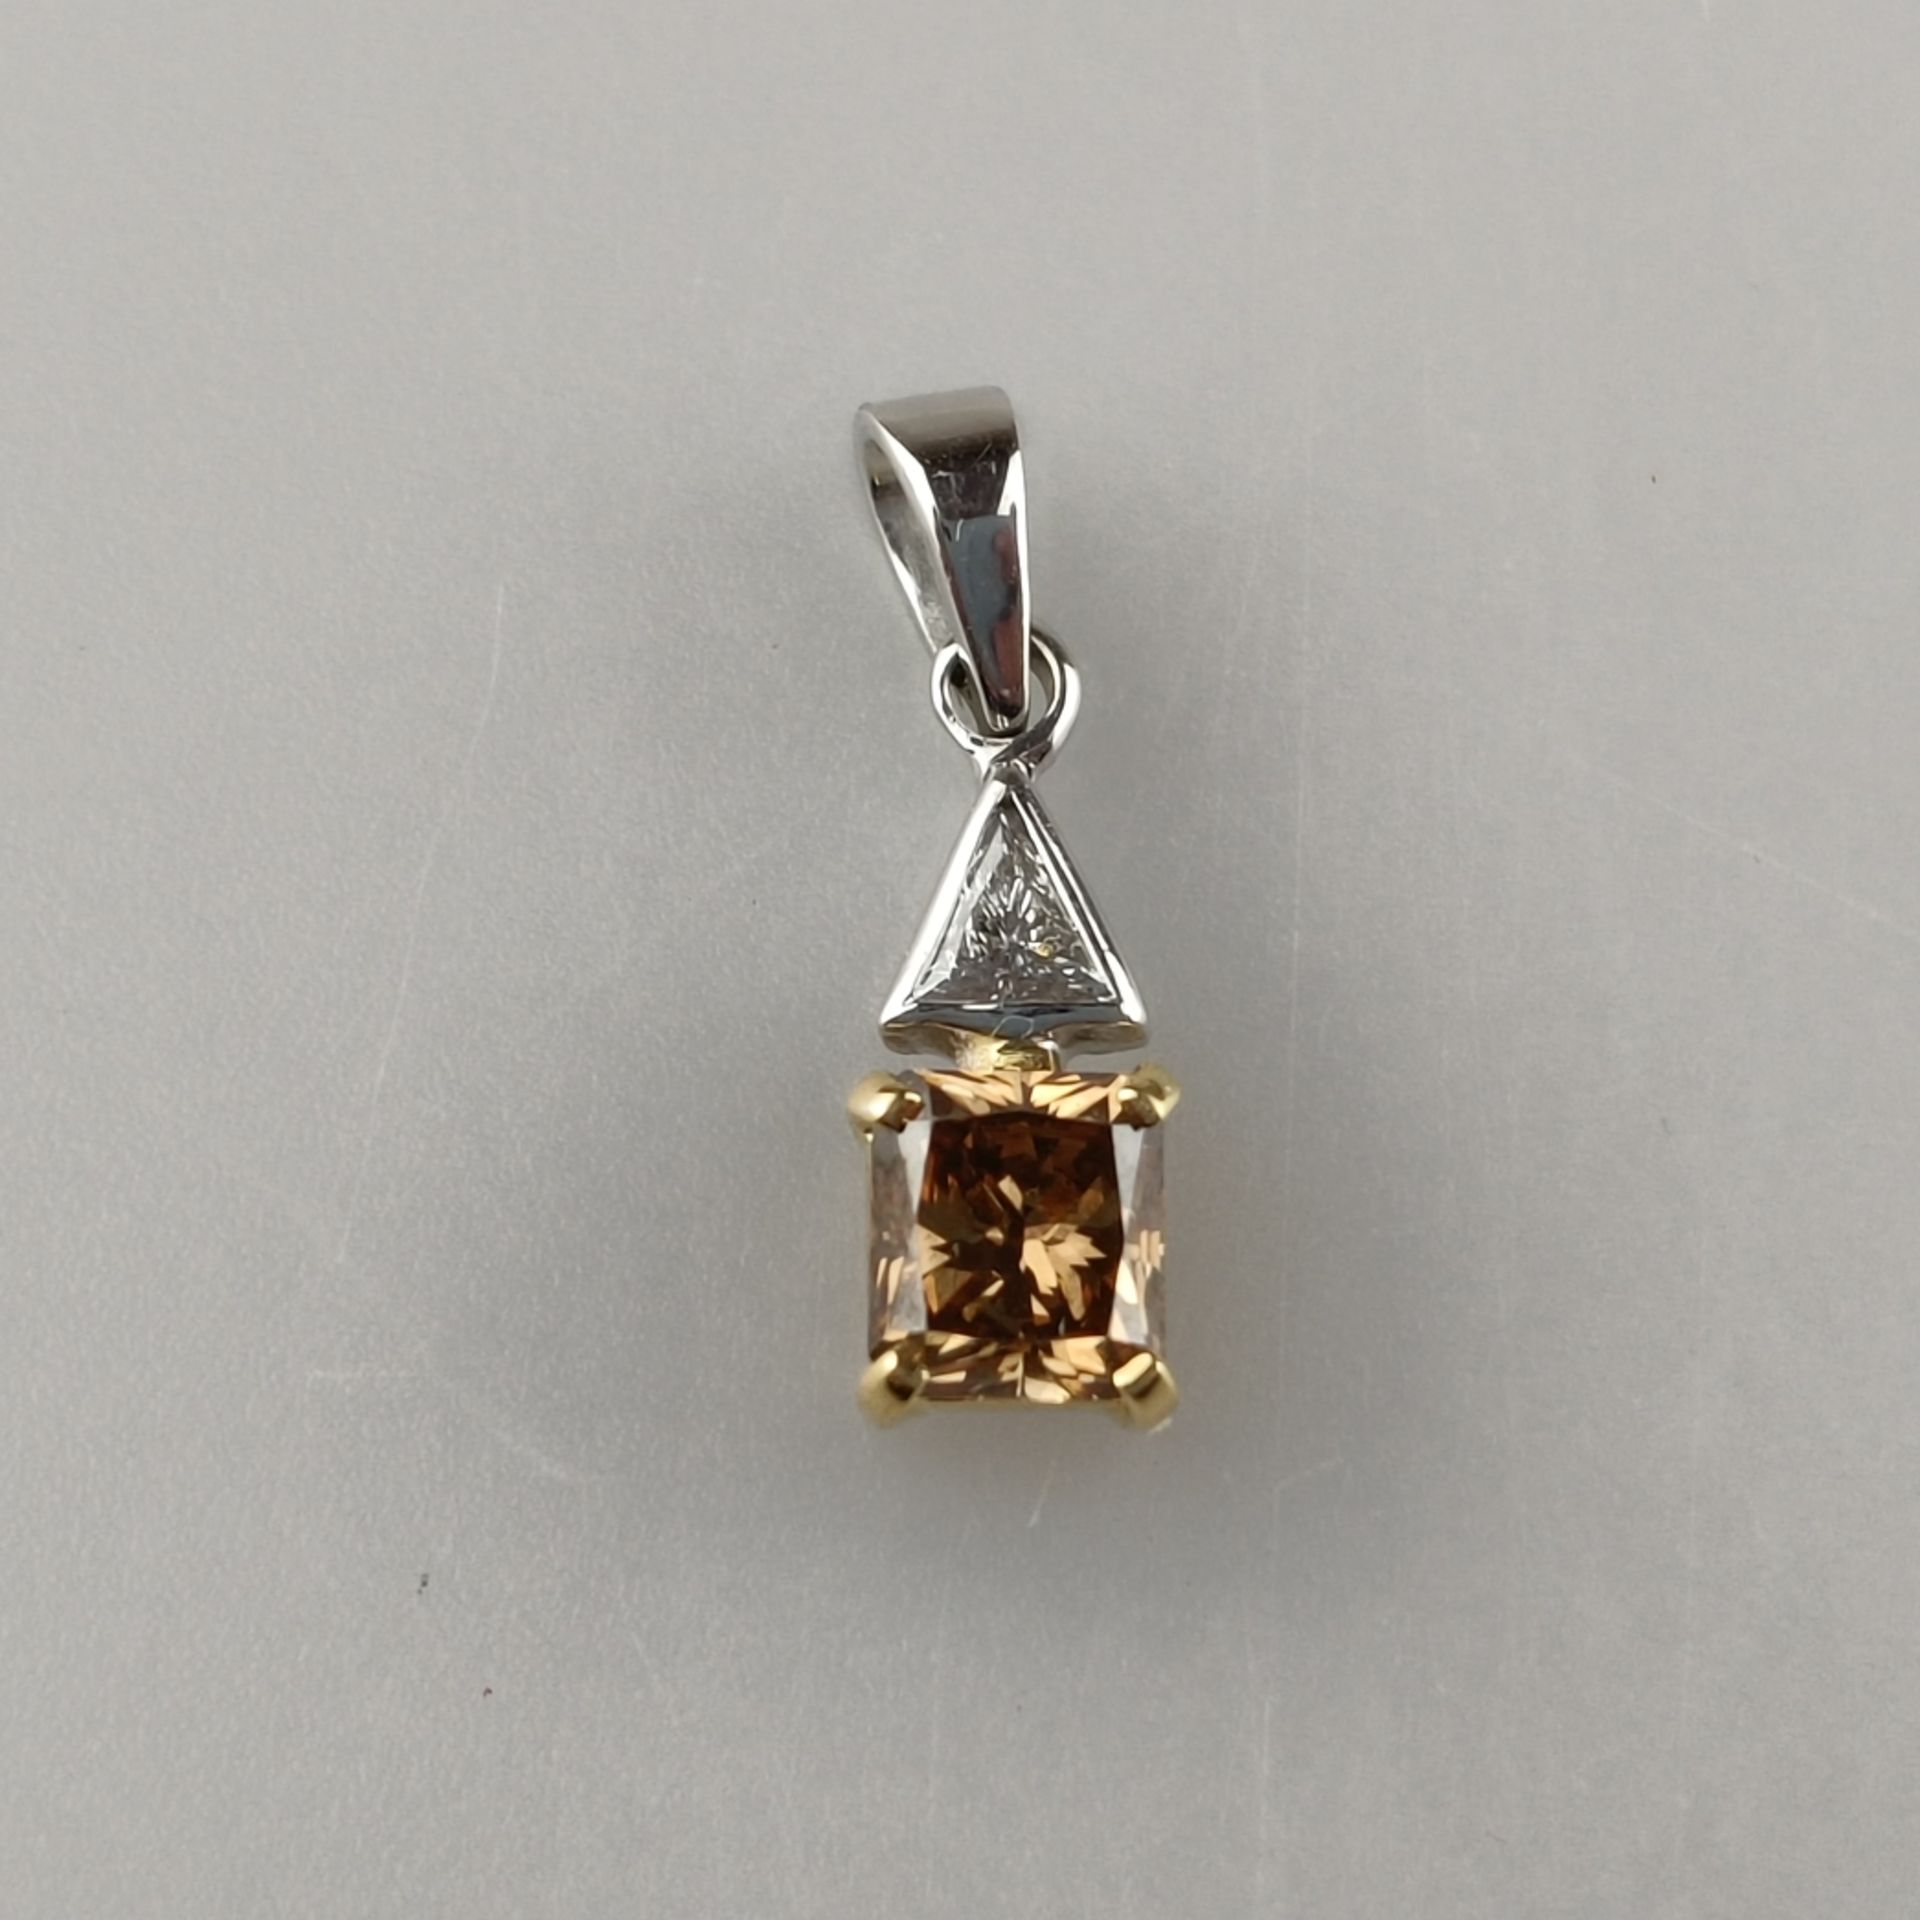 Diamantanhänger von über 1 Karat - Weiß-/ Gelbgold 750/000 (18K), rechteckiger Anhänger besetzt mit - Bild 4 aus 9